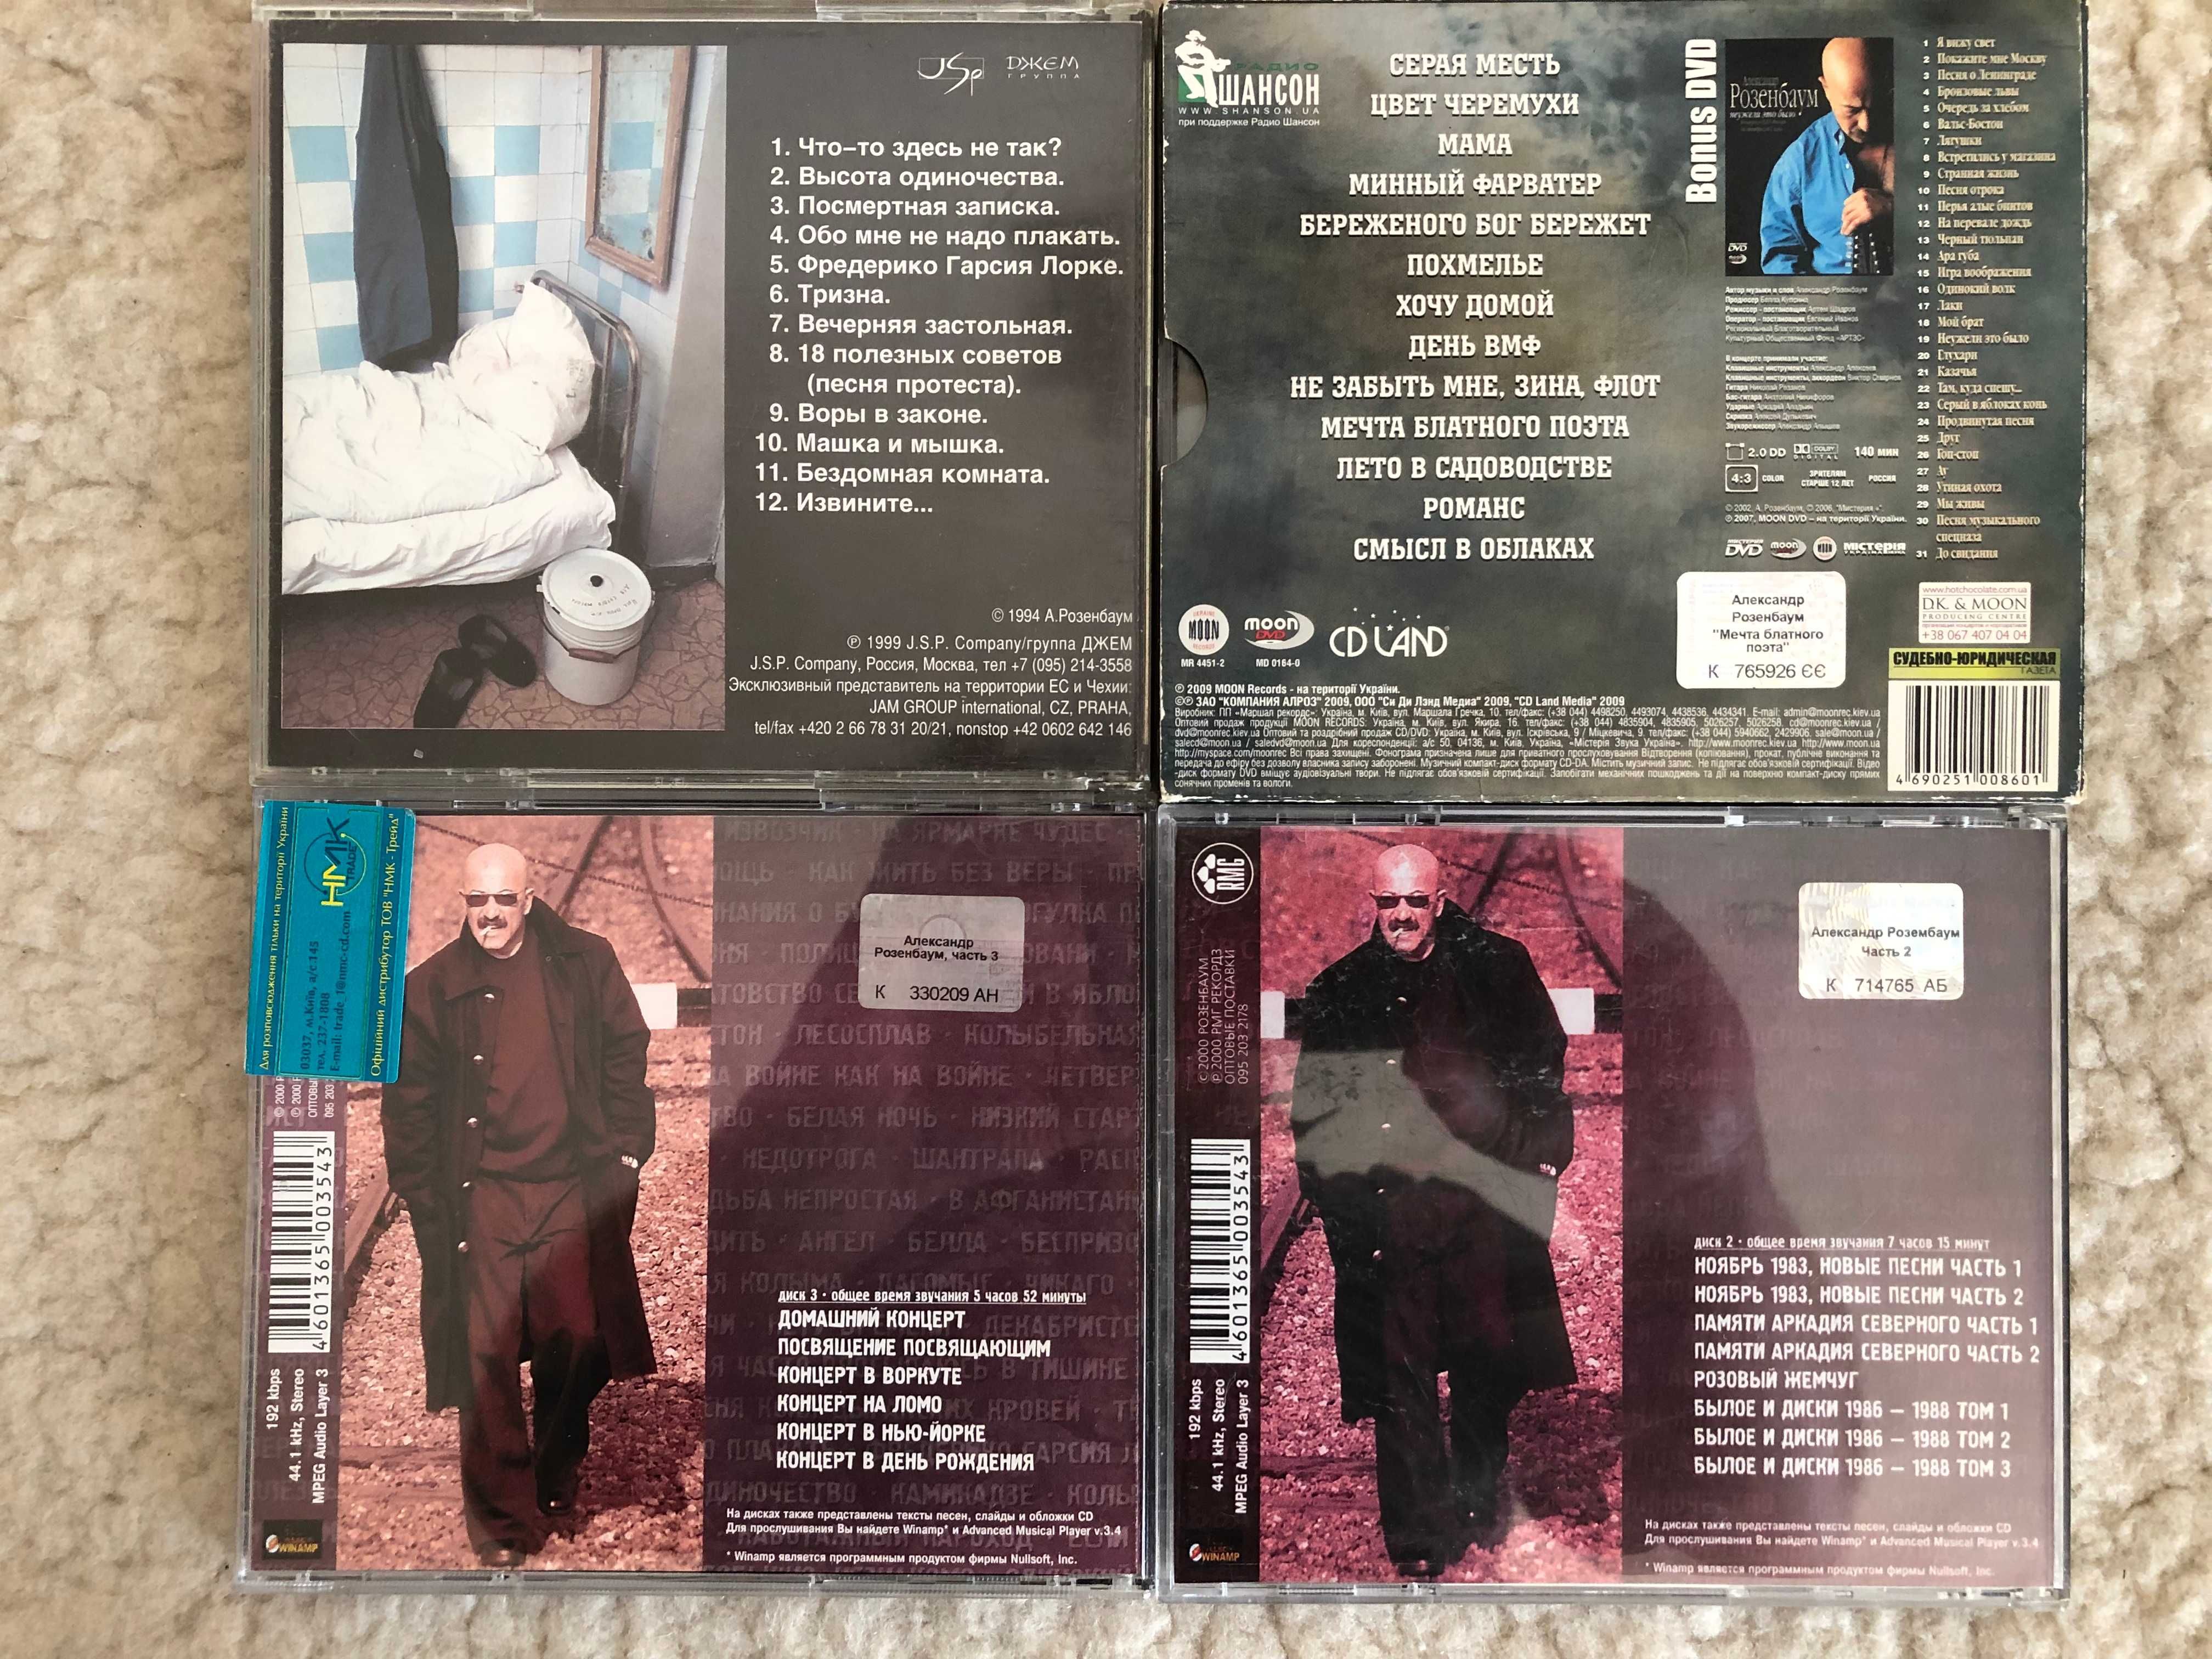 Płyty CD z kompletu plyt z muzyką rosyjską